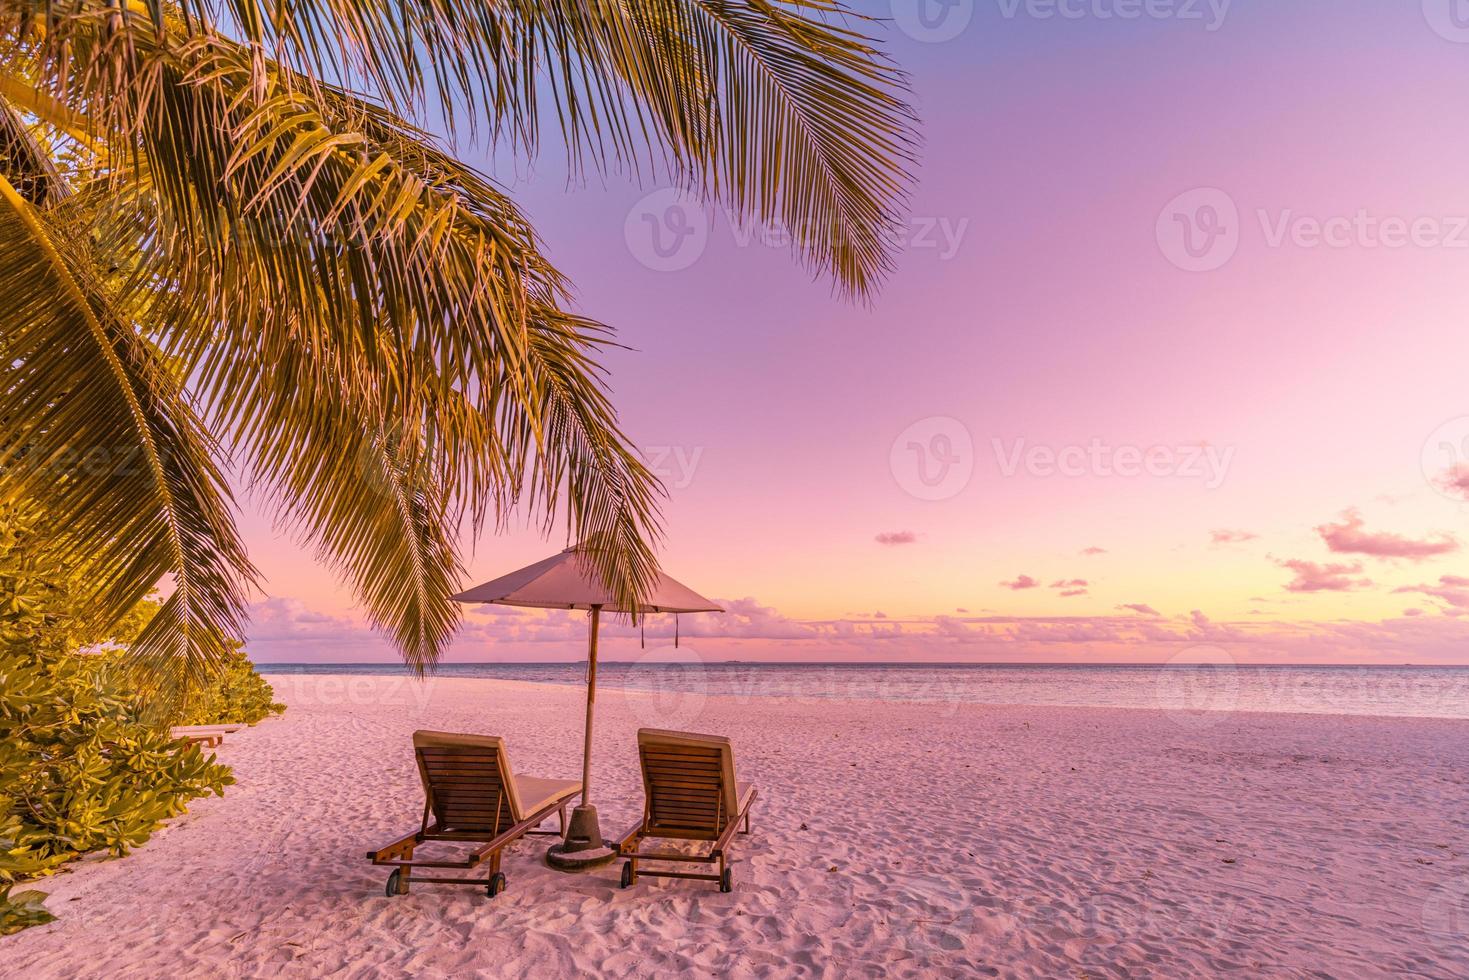 prachtig strand. stoelen op het zandstrand in de buurt van de zee. zomervakantie en vakantieconcept voor toerisme. inspirerend tropisch landschap. rustig landschap, ontspannend strand, tropisch landschapsontwerp foto